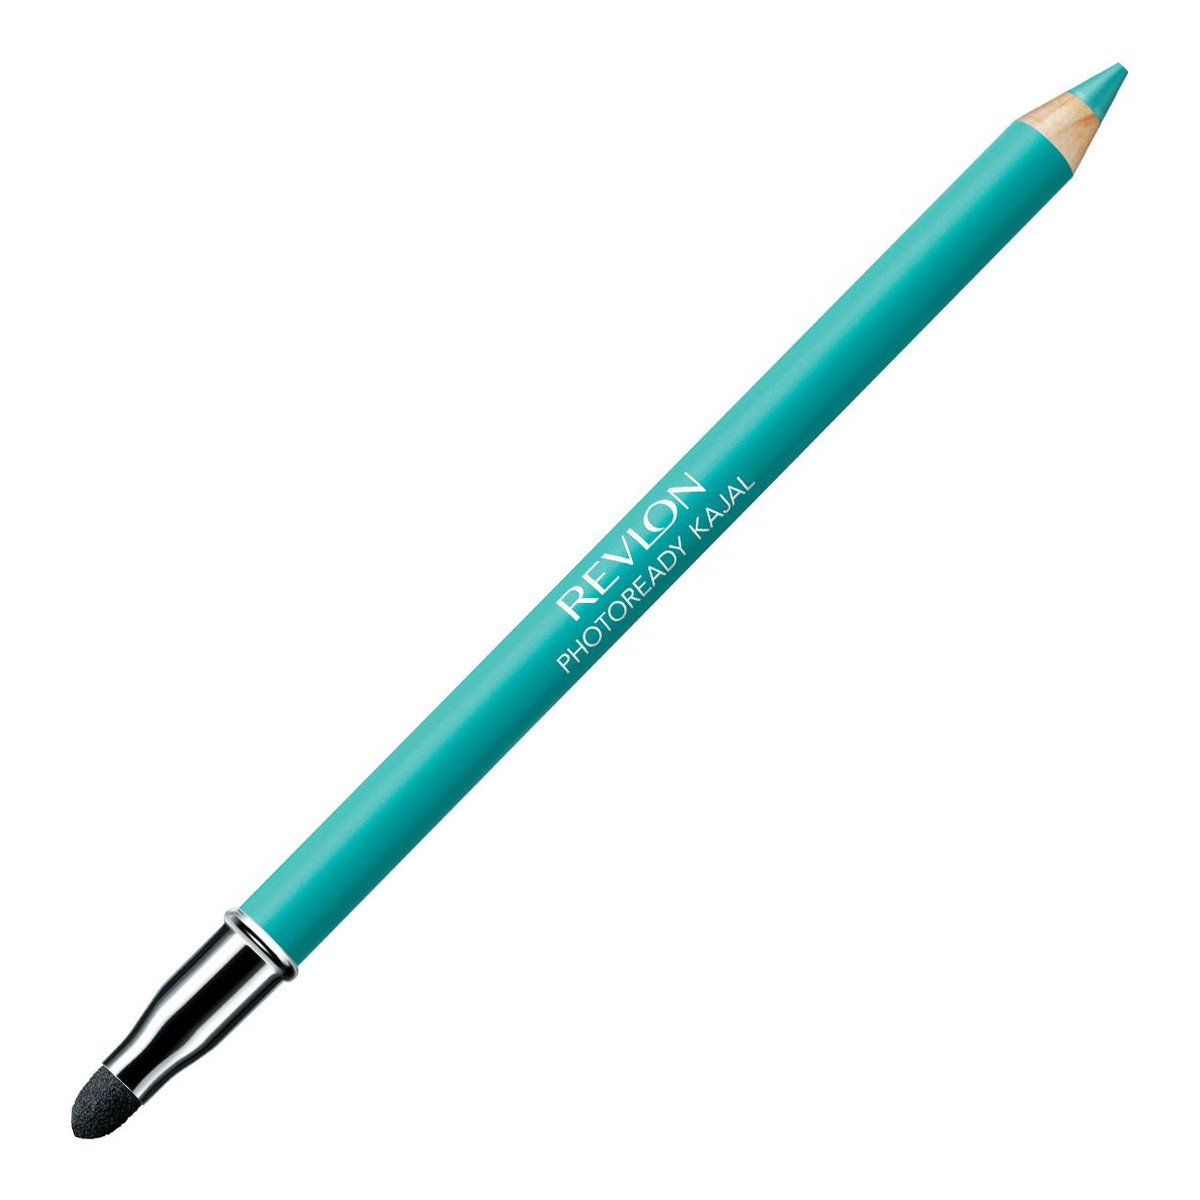 Revlon Matte Eye Pencil Photoready Matowa Kredka Do Oczu Z Gąbką